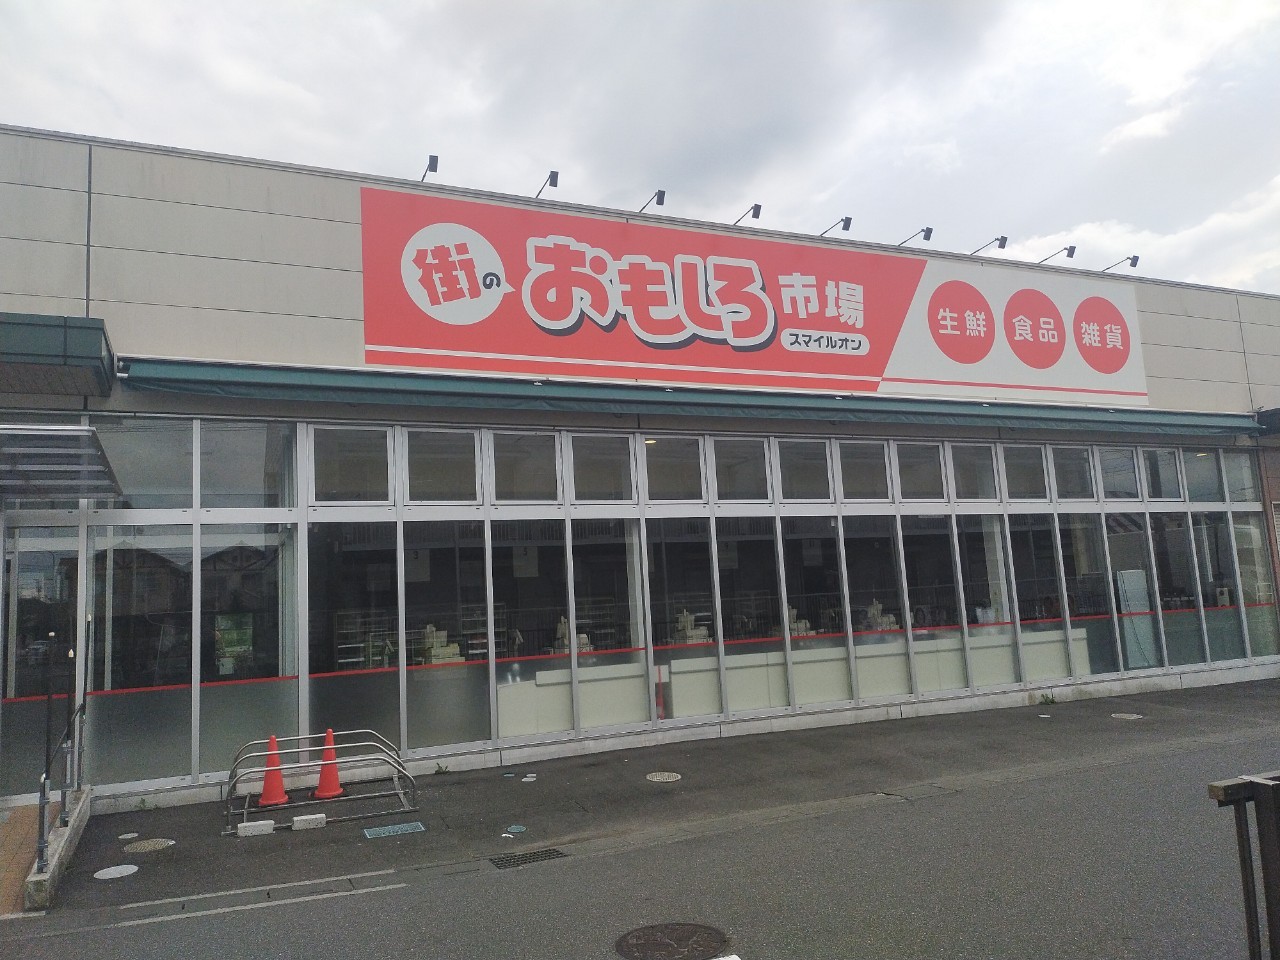 弥十郎のスーパー、街のおもしろ市場スマイルオンが閉店していました【がやてっく閉店】